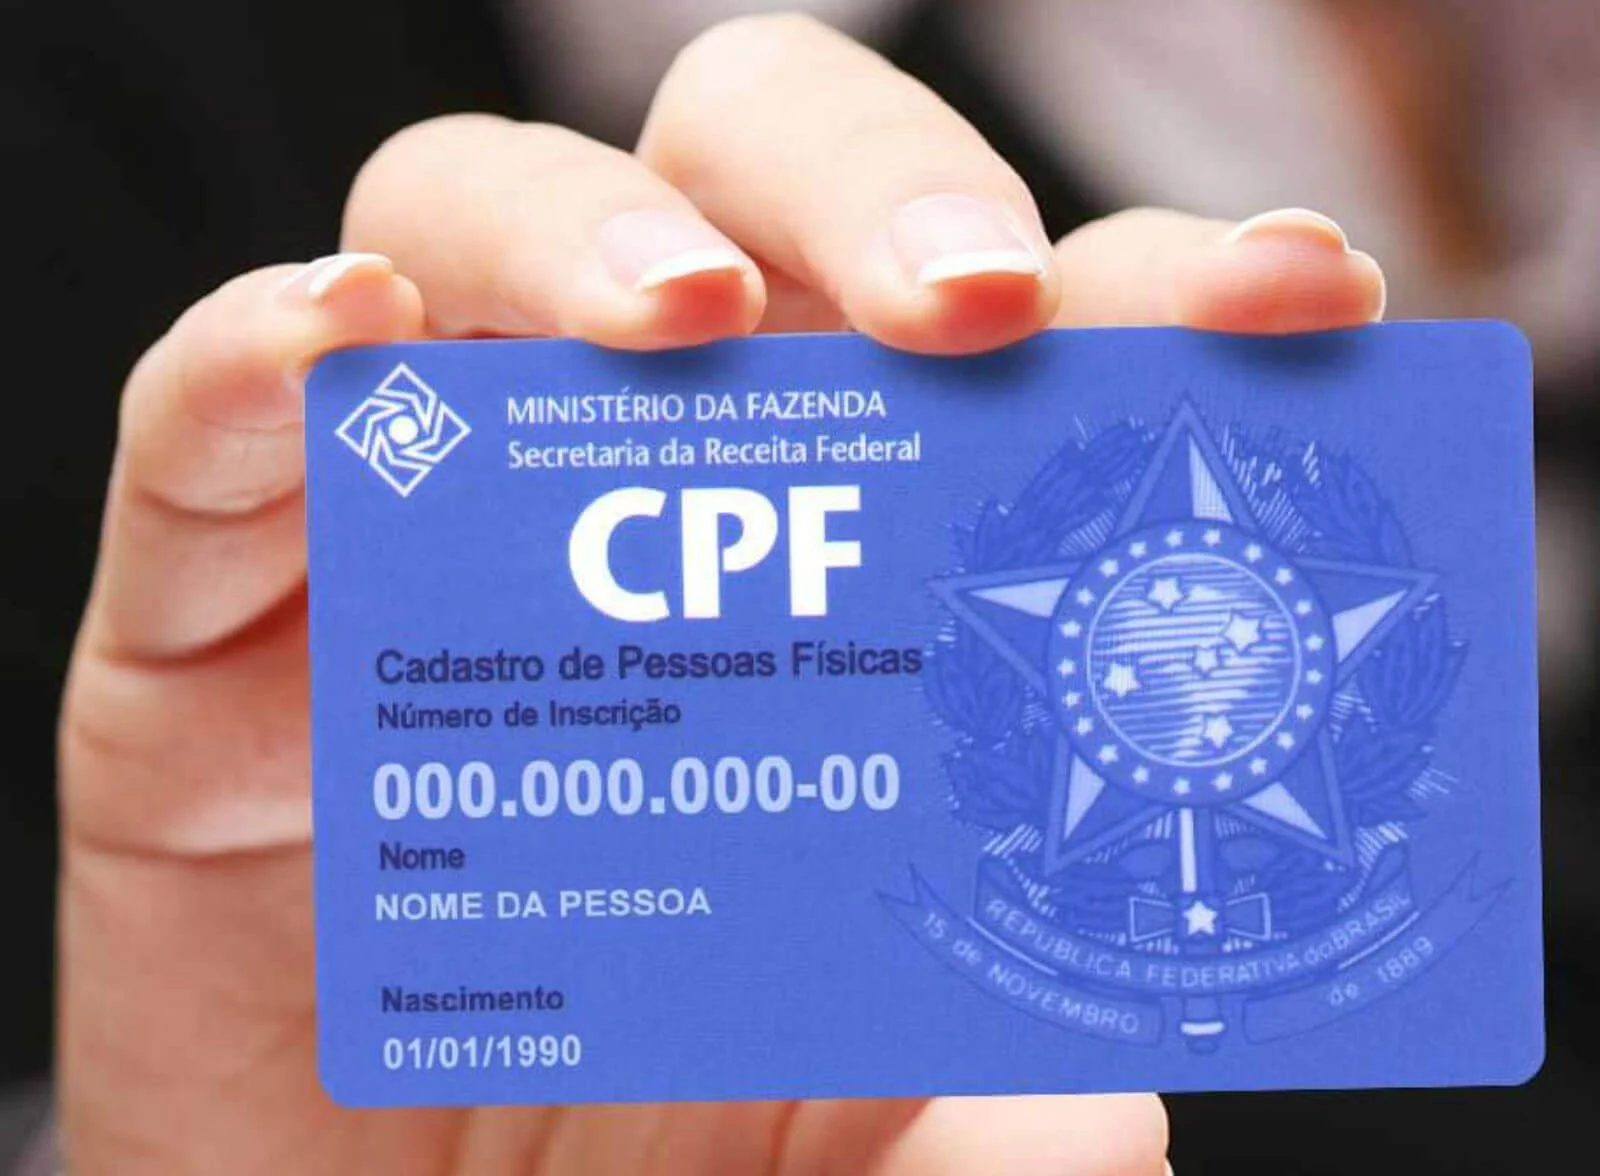 O CPF irregular pode bloquear contas bancárias?